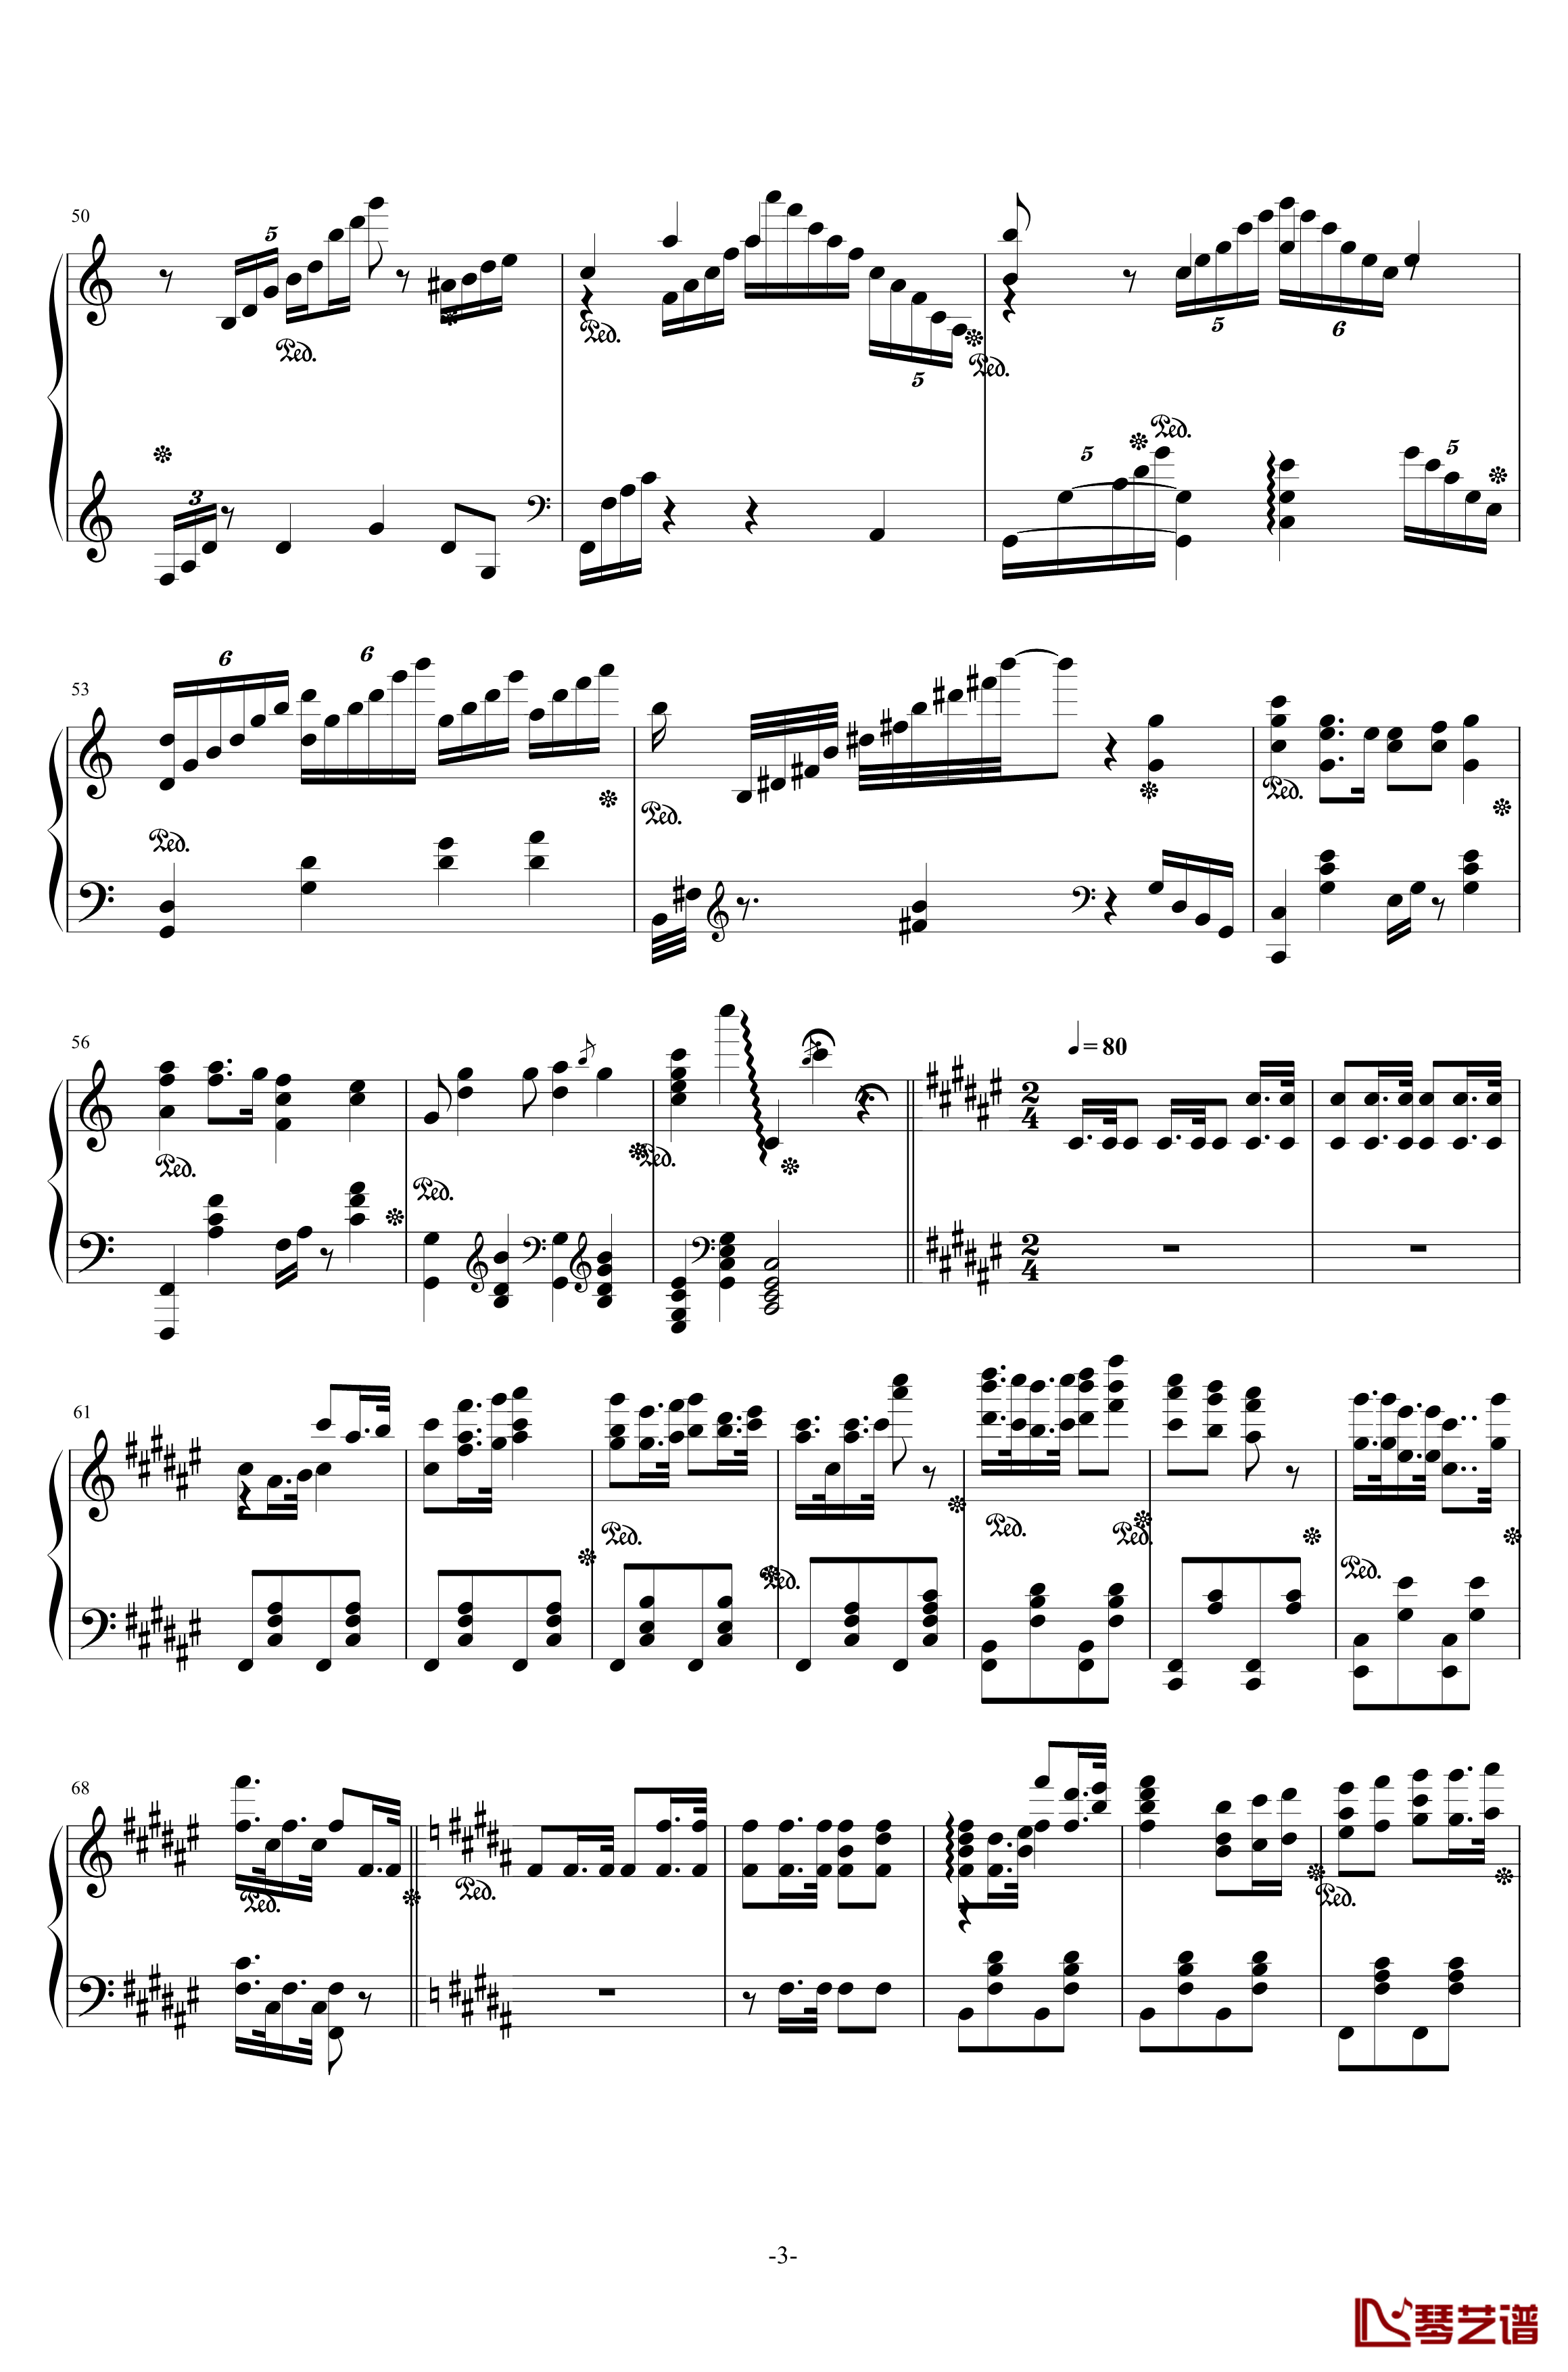 西安音乐学院校歌钢琴谱-校园歌曲